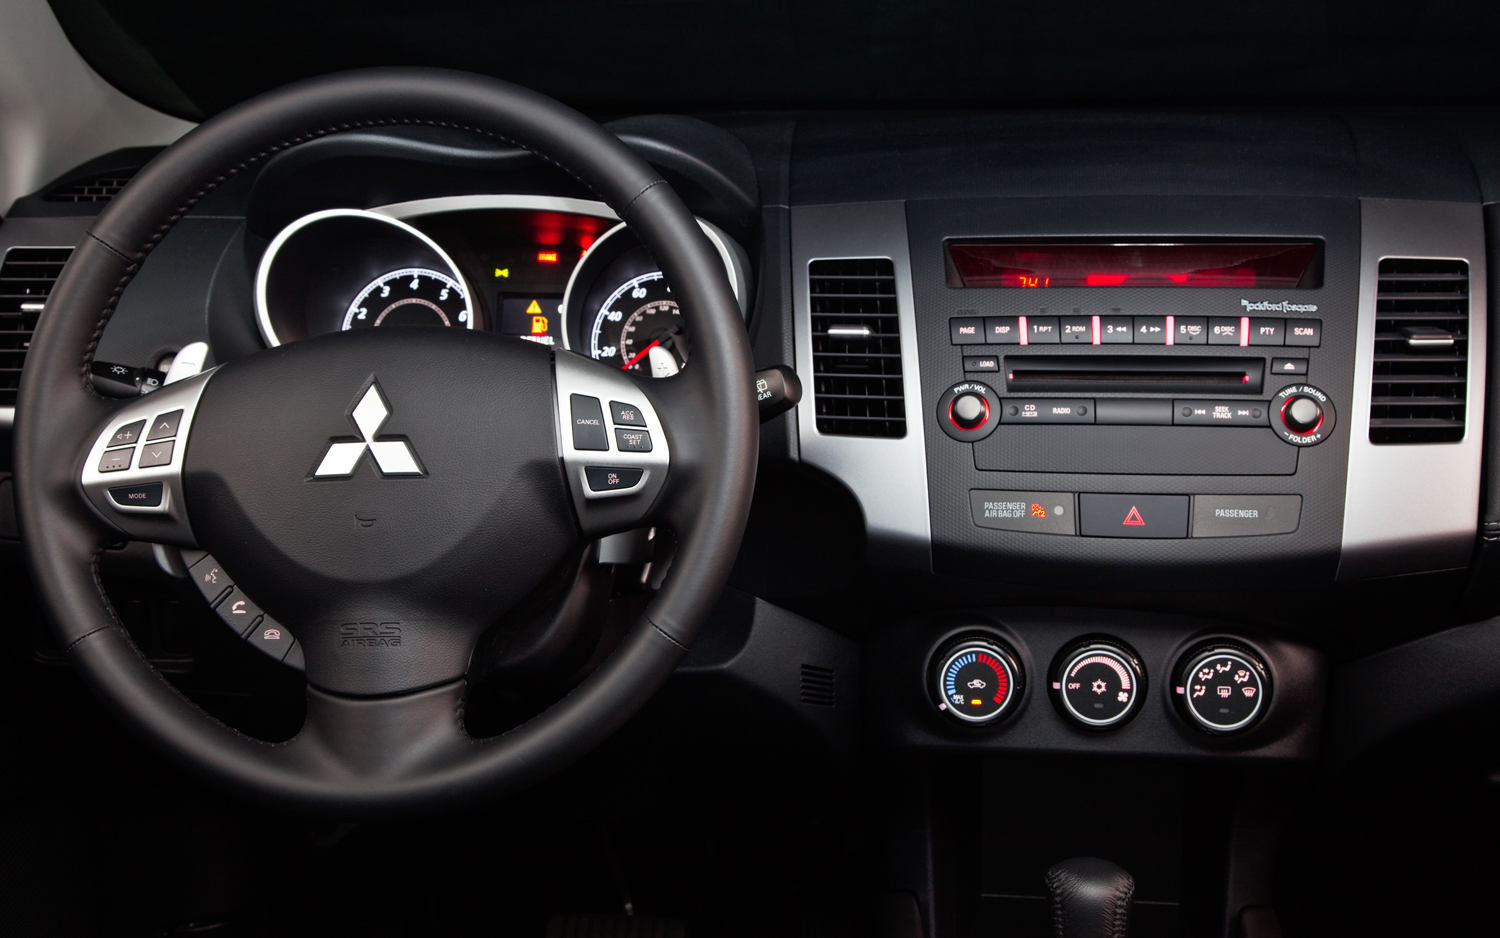 2012 Mitsubishi Outlander Information And Photos Momentcar